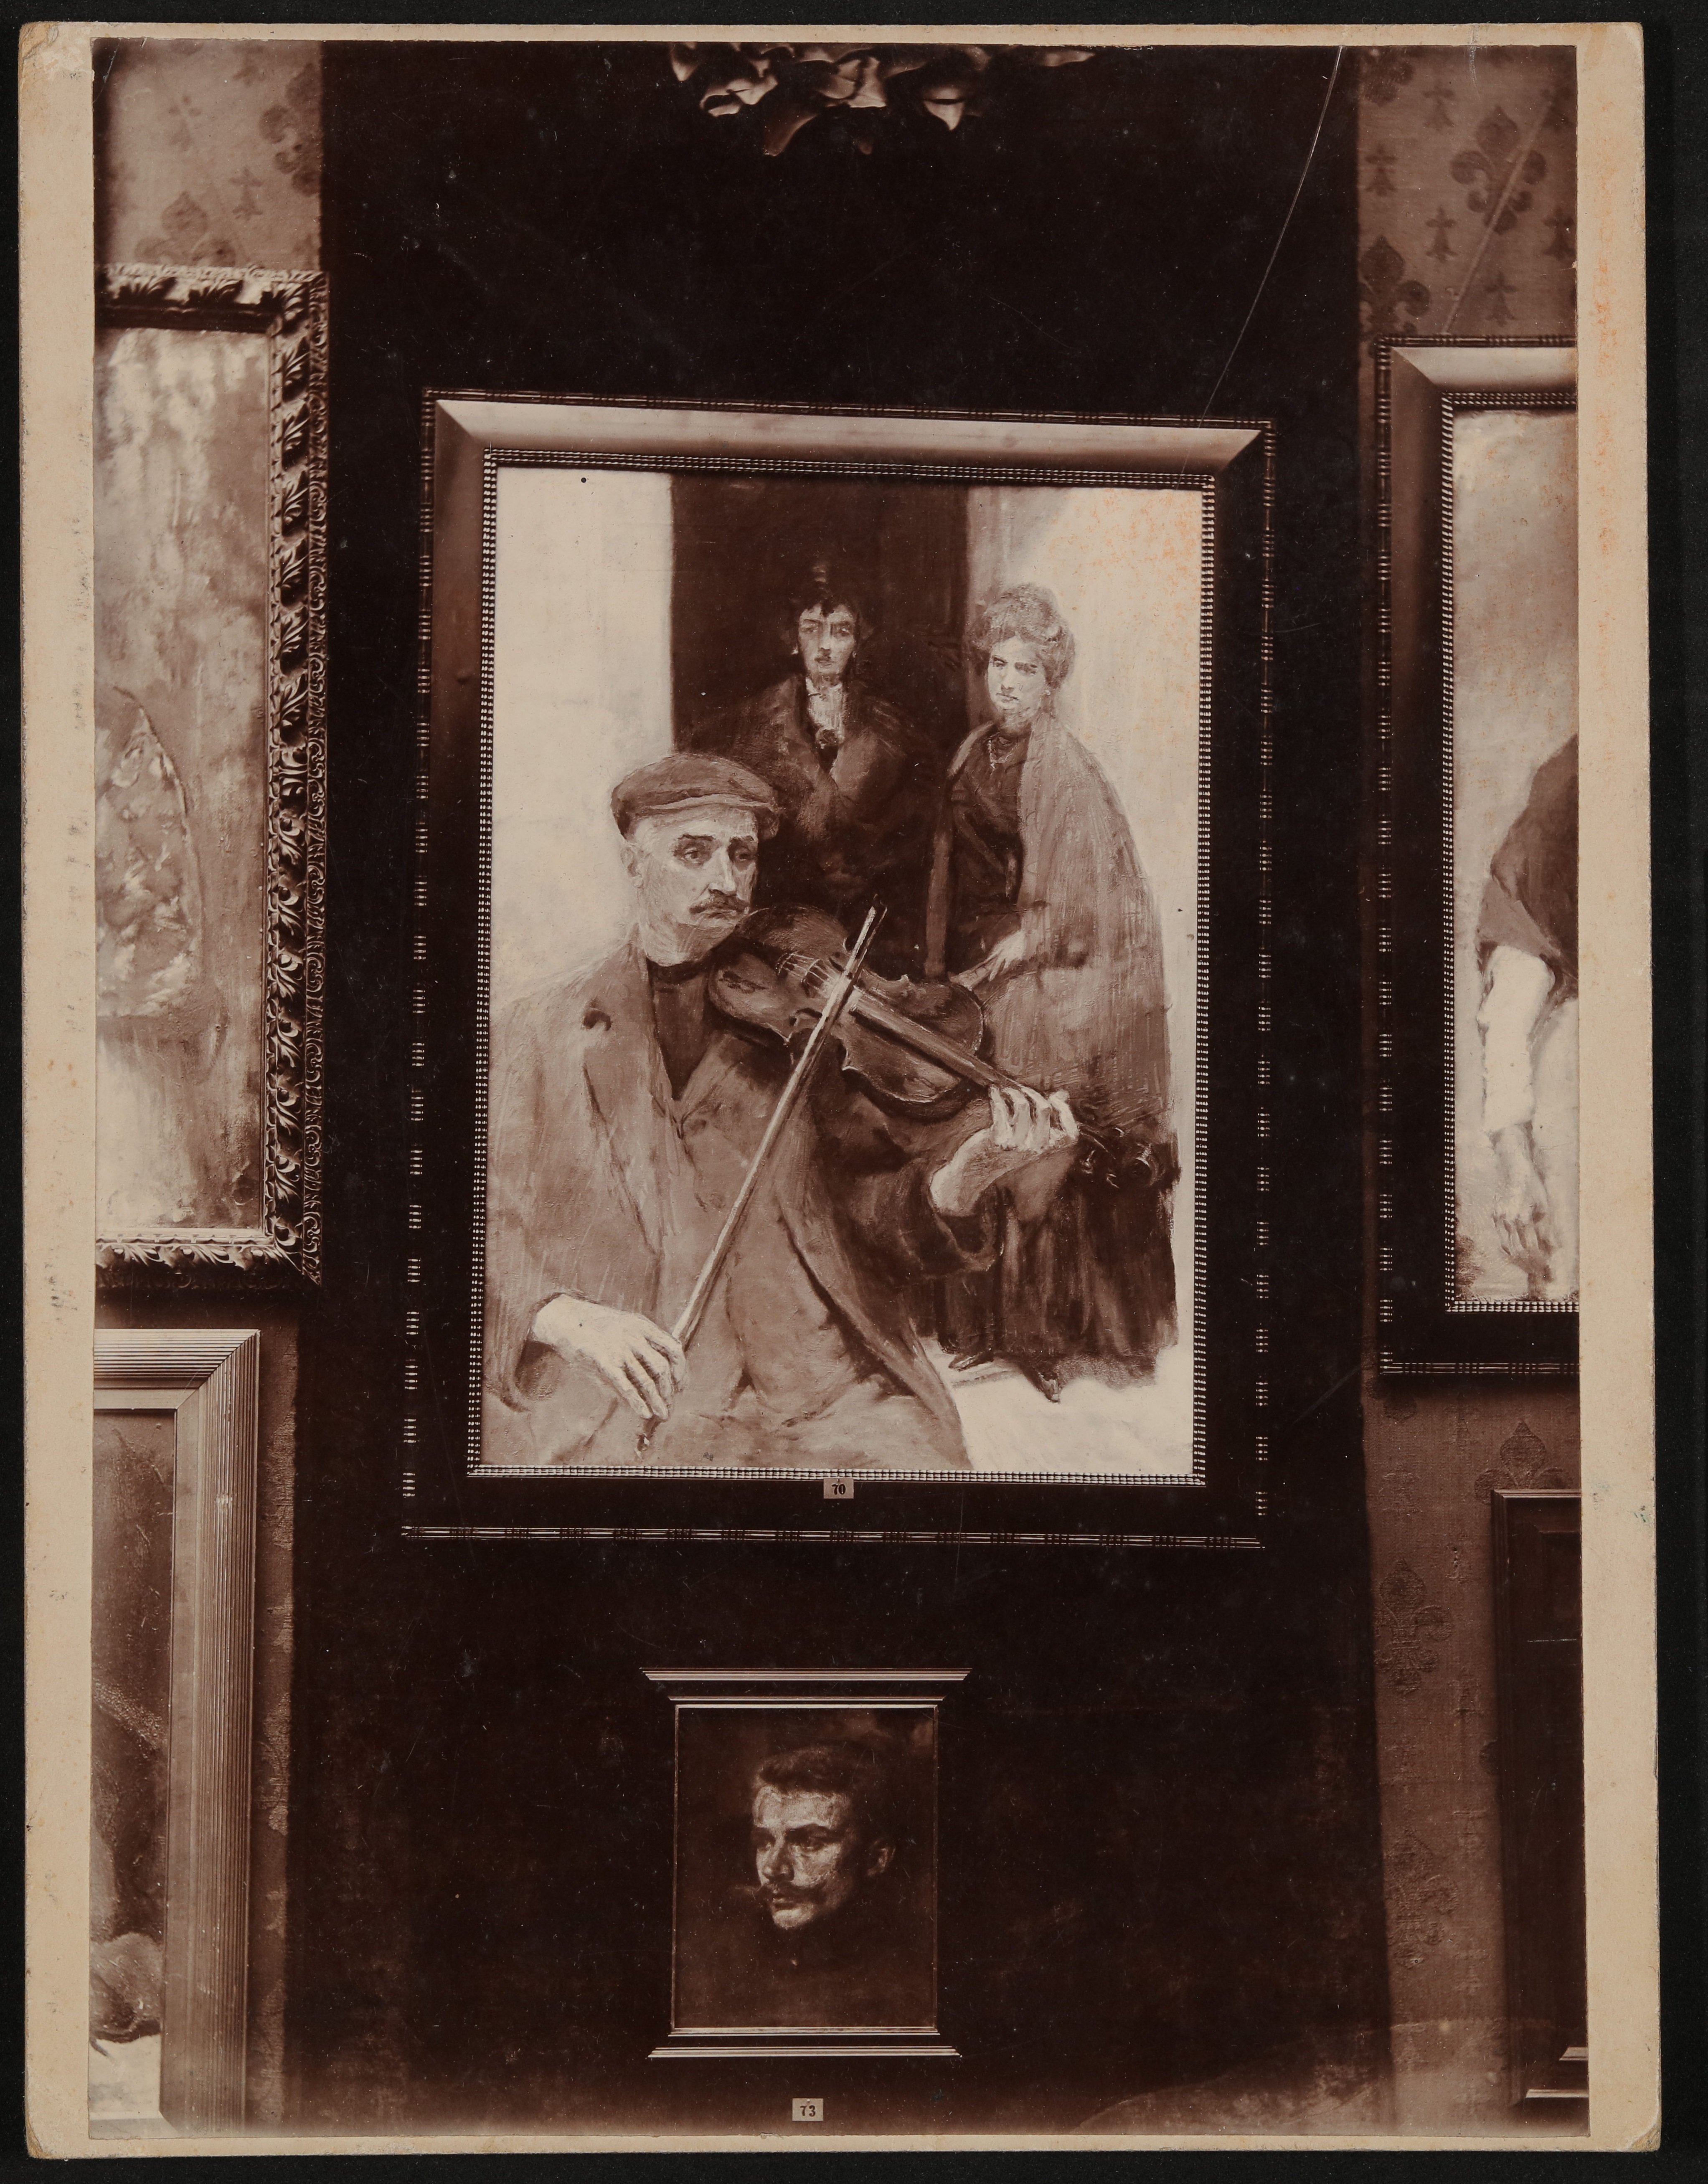 Foto von Gemälden (Geigespieler und junger Mann) von Hans Schlesinger, vermutlich in der Ausstellung 1907 (Freies Deutsches Hochstift / Frankfurter Goethe-Museum CC BY-NC-SA)